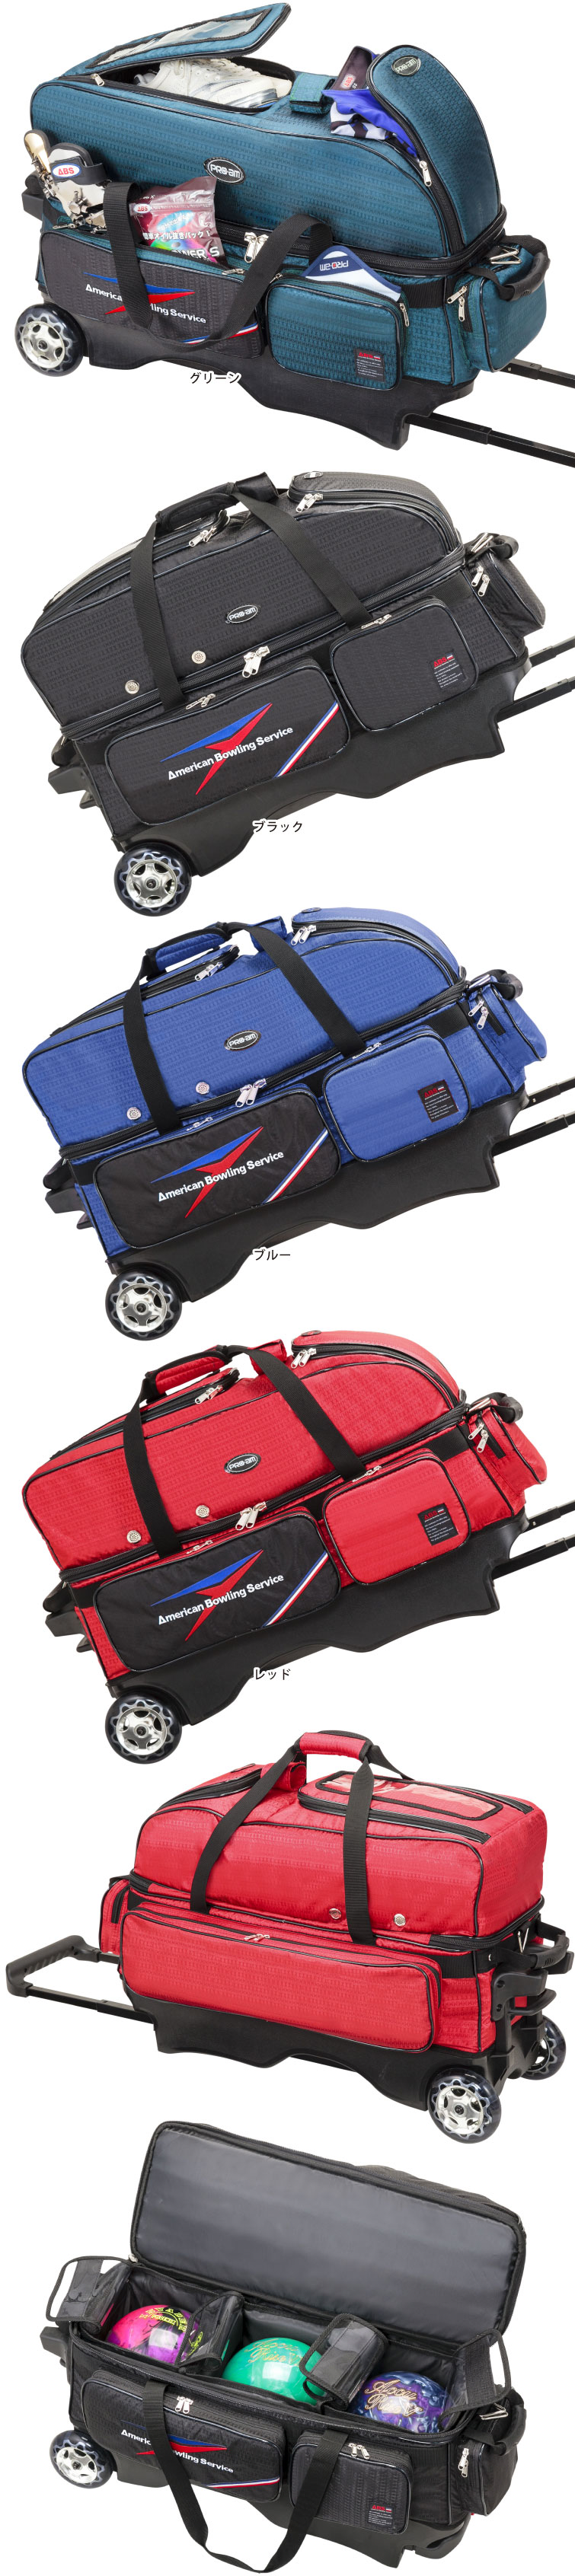 ボウリングバッグ ABS 】B20-2380 ボール3個入りカートバッグ バッグ フタバプロショップオンライン